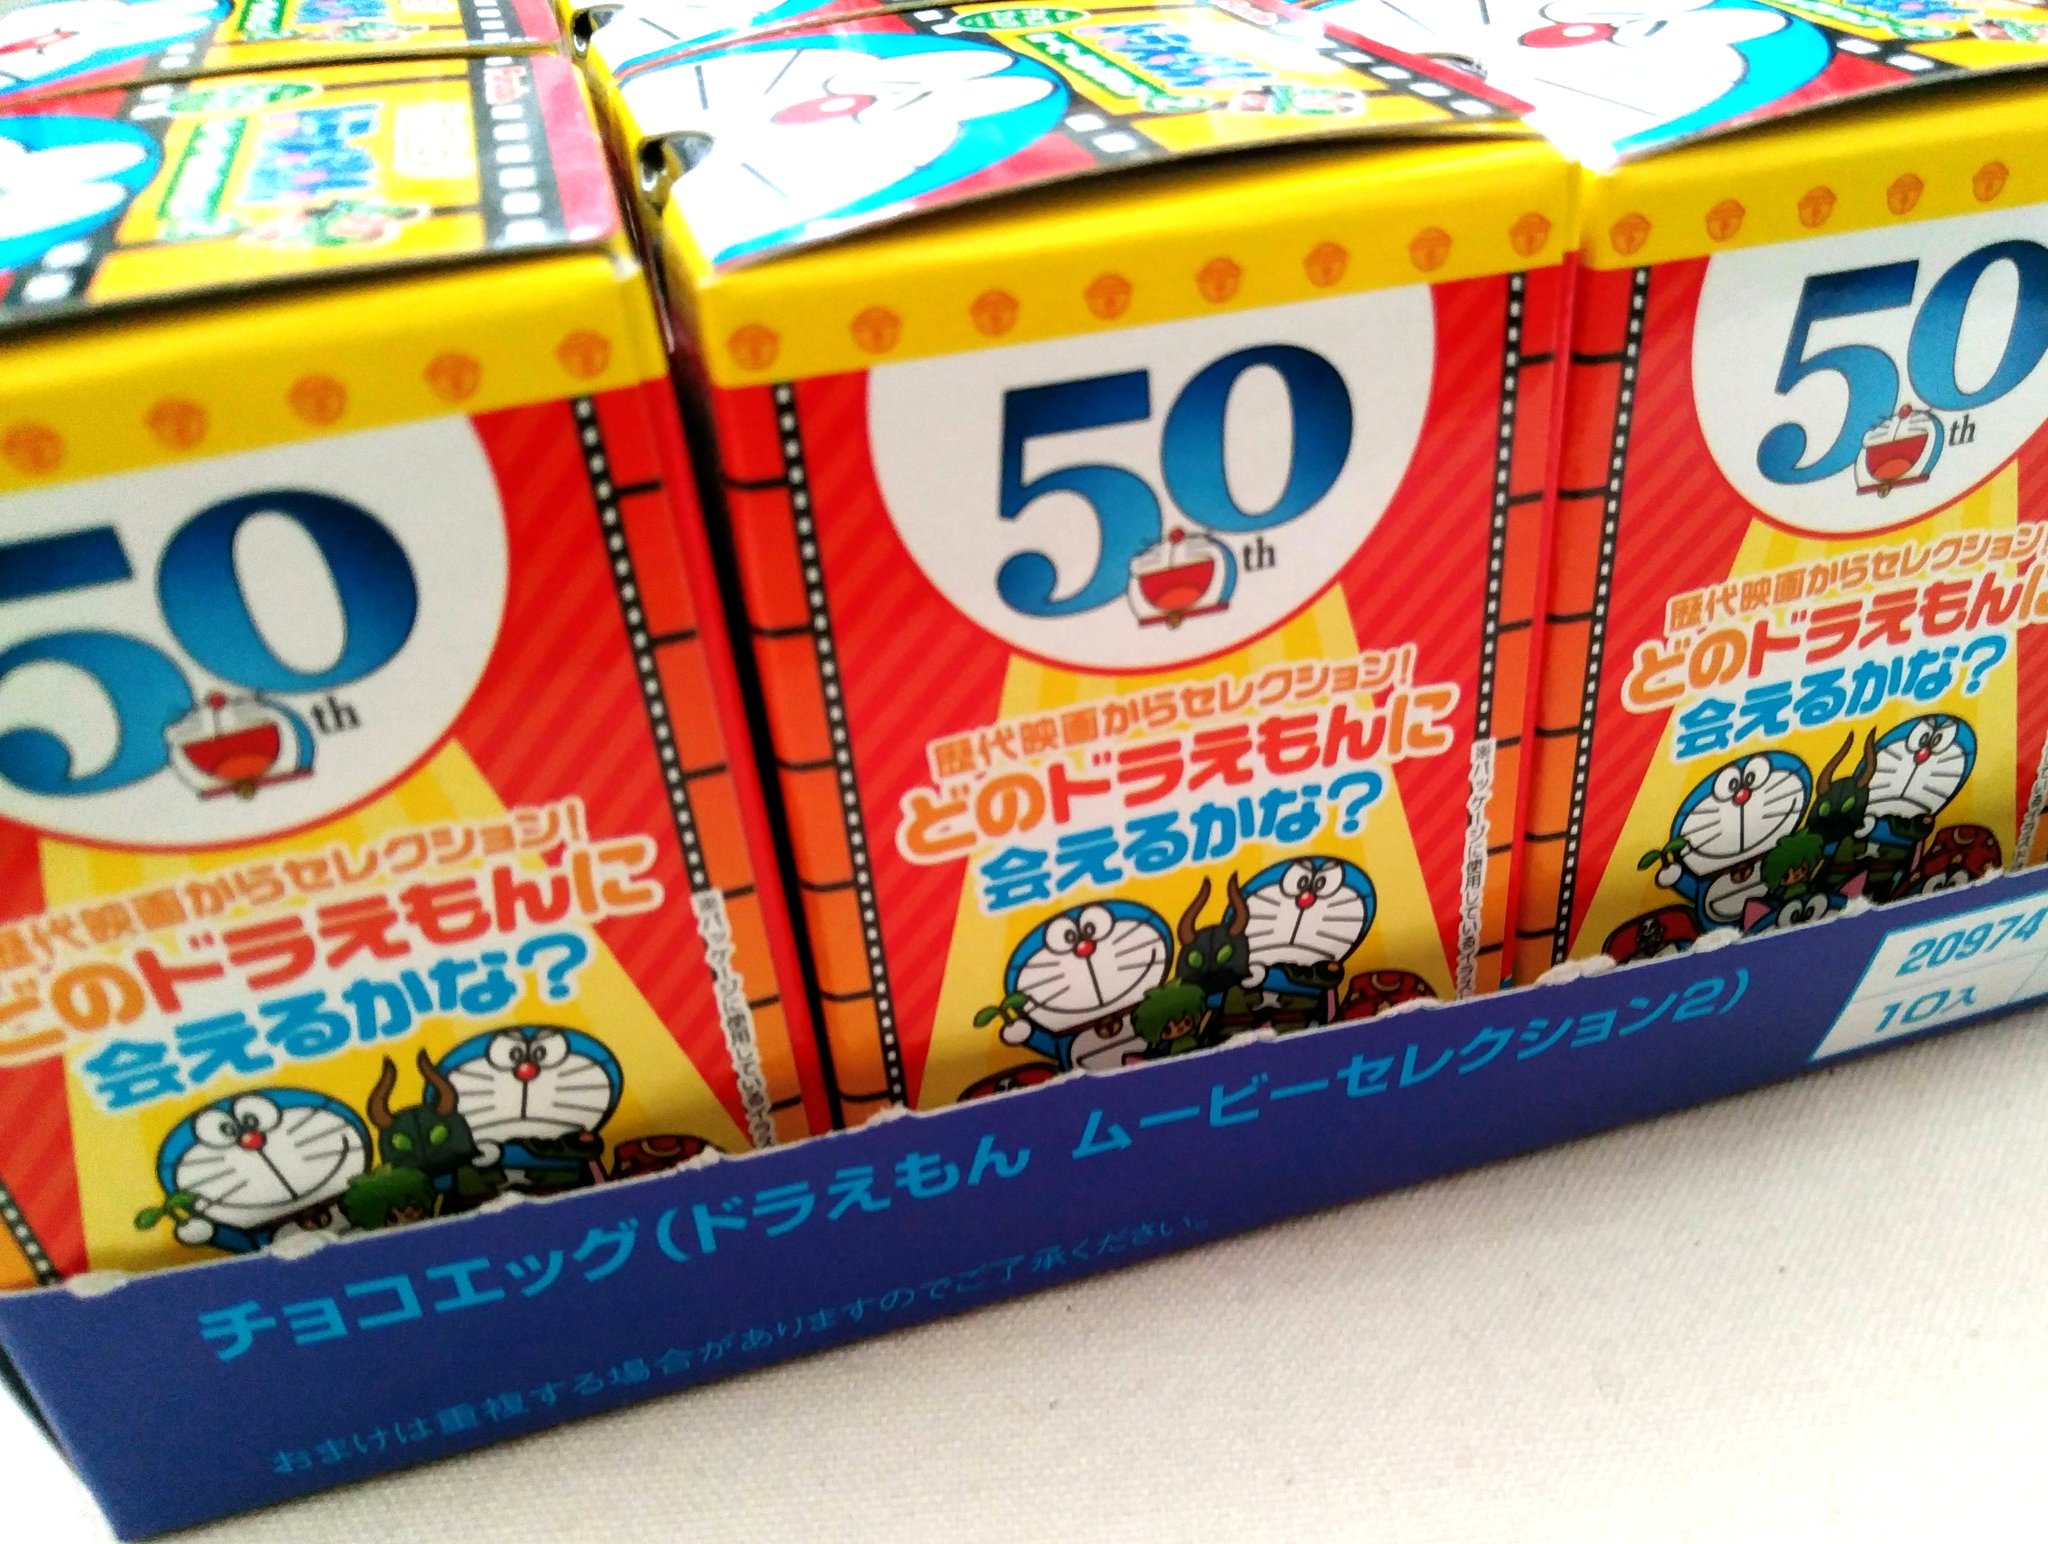 稲垣高広 仮面次郎 Koikesan على تويتر チョコエッグドラえもんムービーセレクションの第2弾 まずは10個まとめ買いしてみました